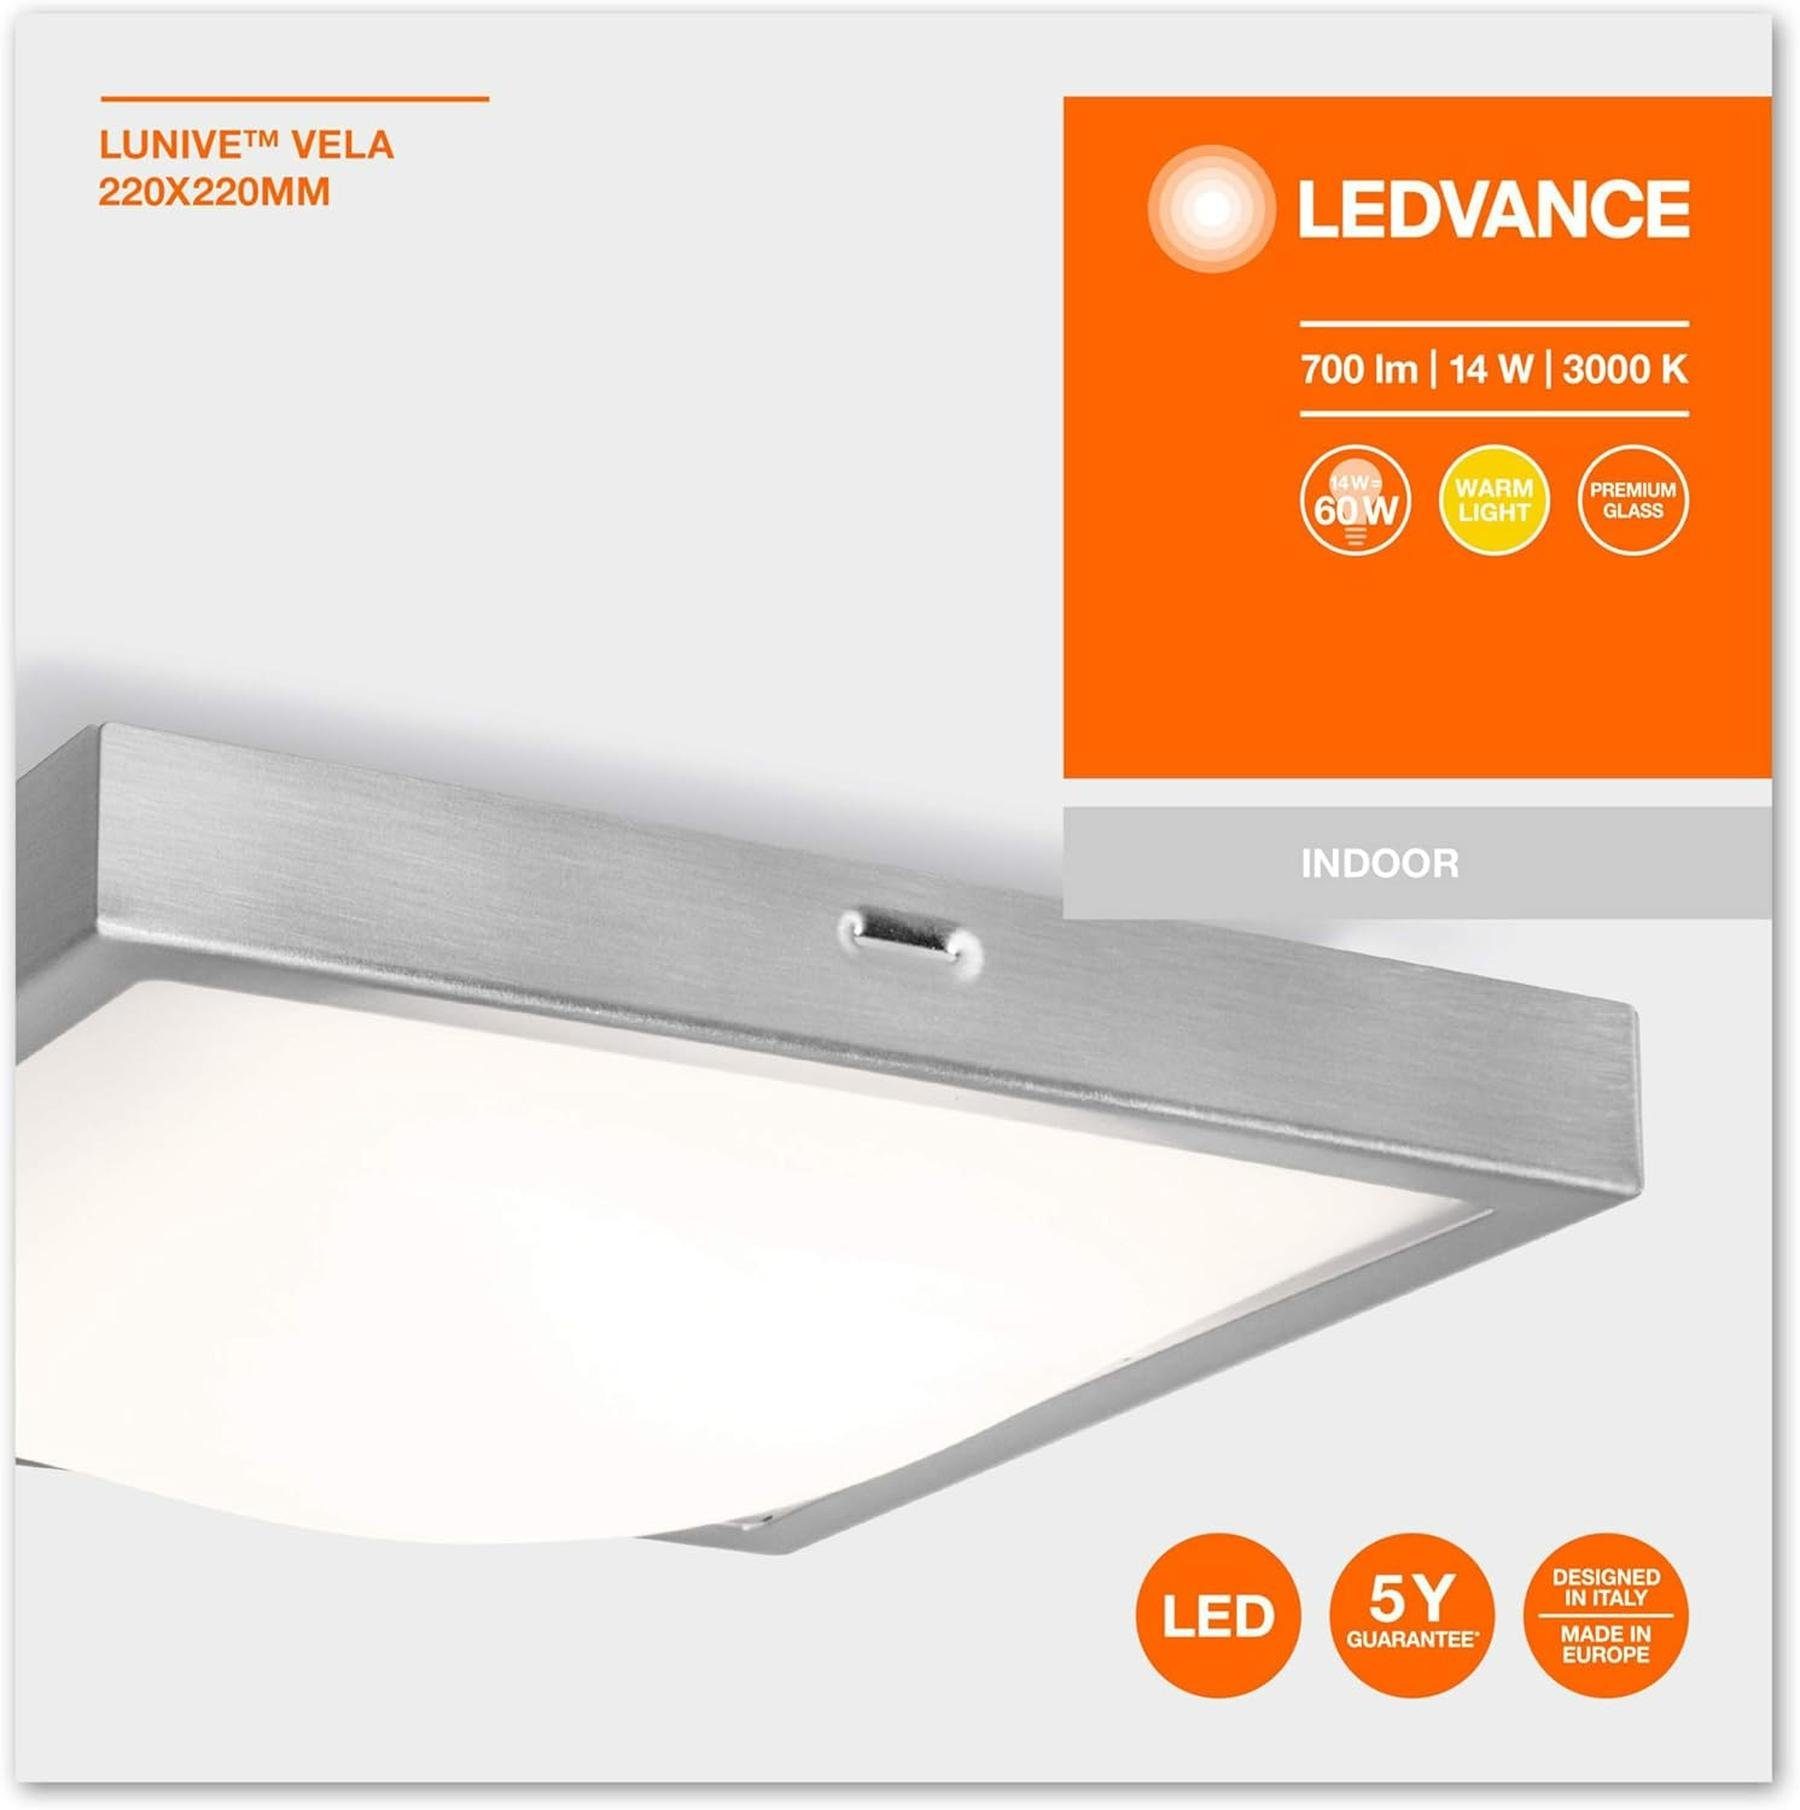 Ledvance Wandleuchte LEDVANCE LED Energieeffizient Warmweiß, und Wand- Deckenleuchte